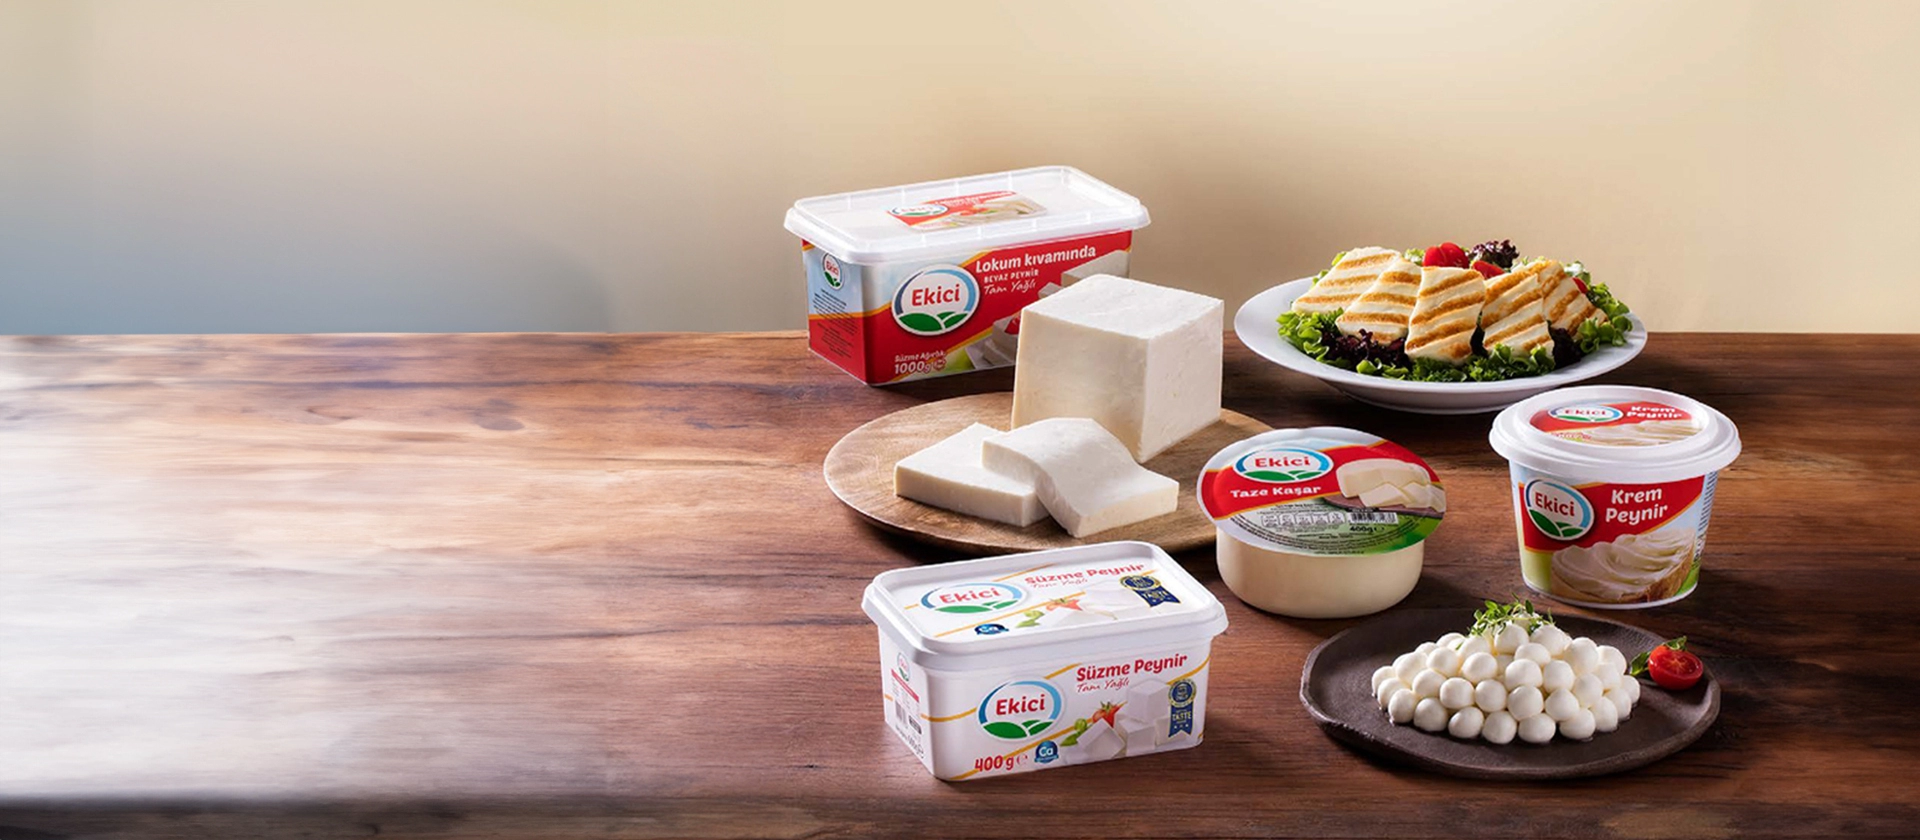 Lokum Tadında “Ekici Peynir” Ürünleri Bool Tüketim’de Toptan Satışta!